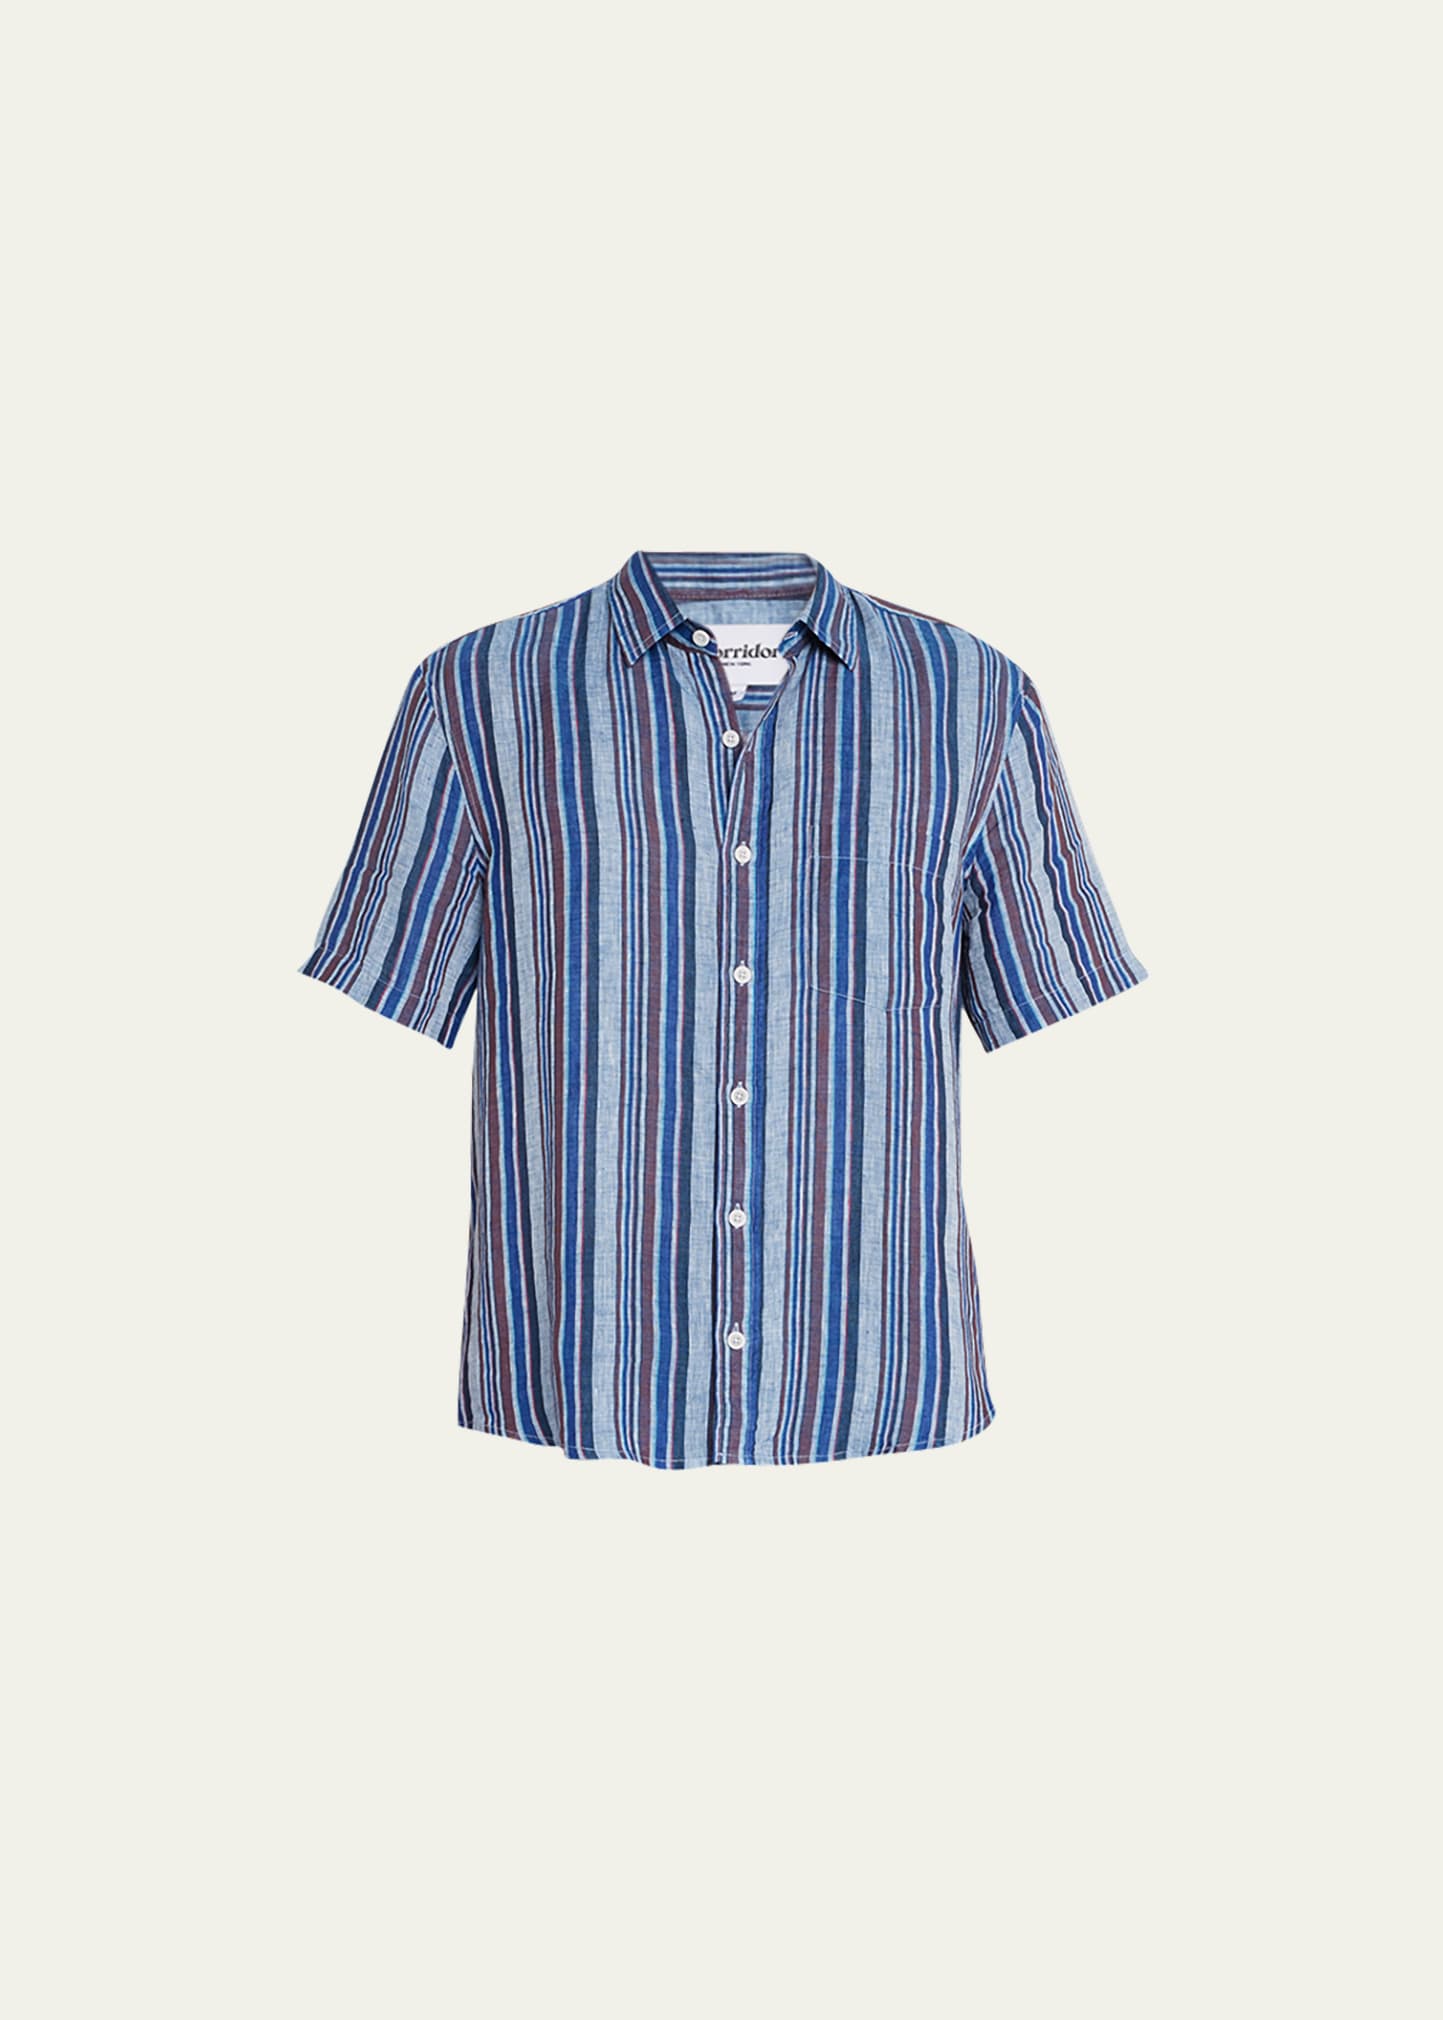 CORRIDOR Men's Vertical Striped Linen Sport Shirt